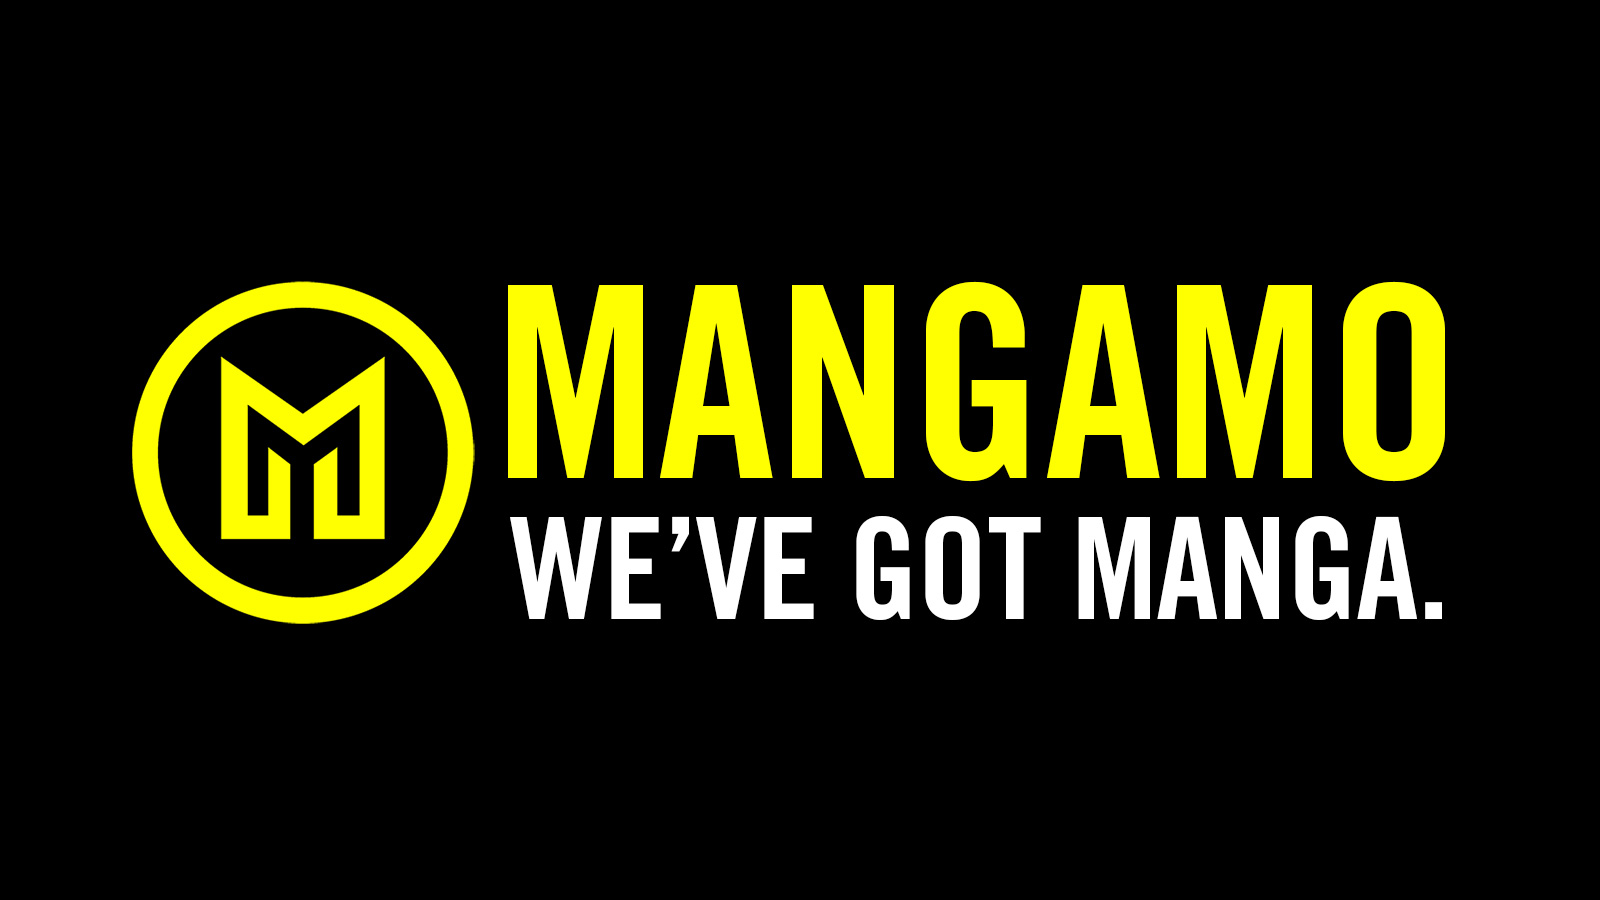 Mangamo Licenses Three New Manga Series